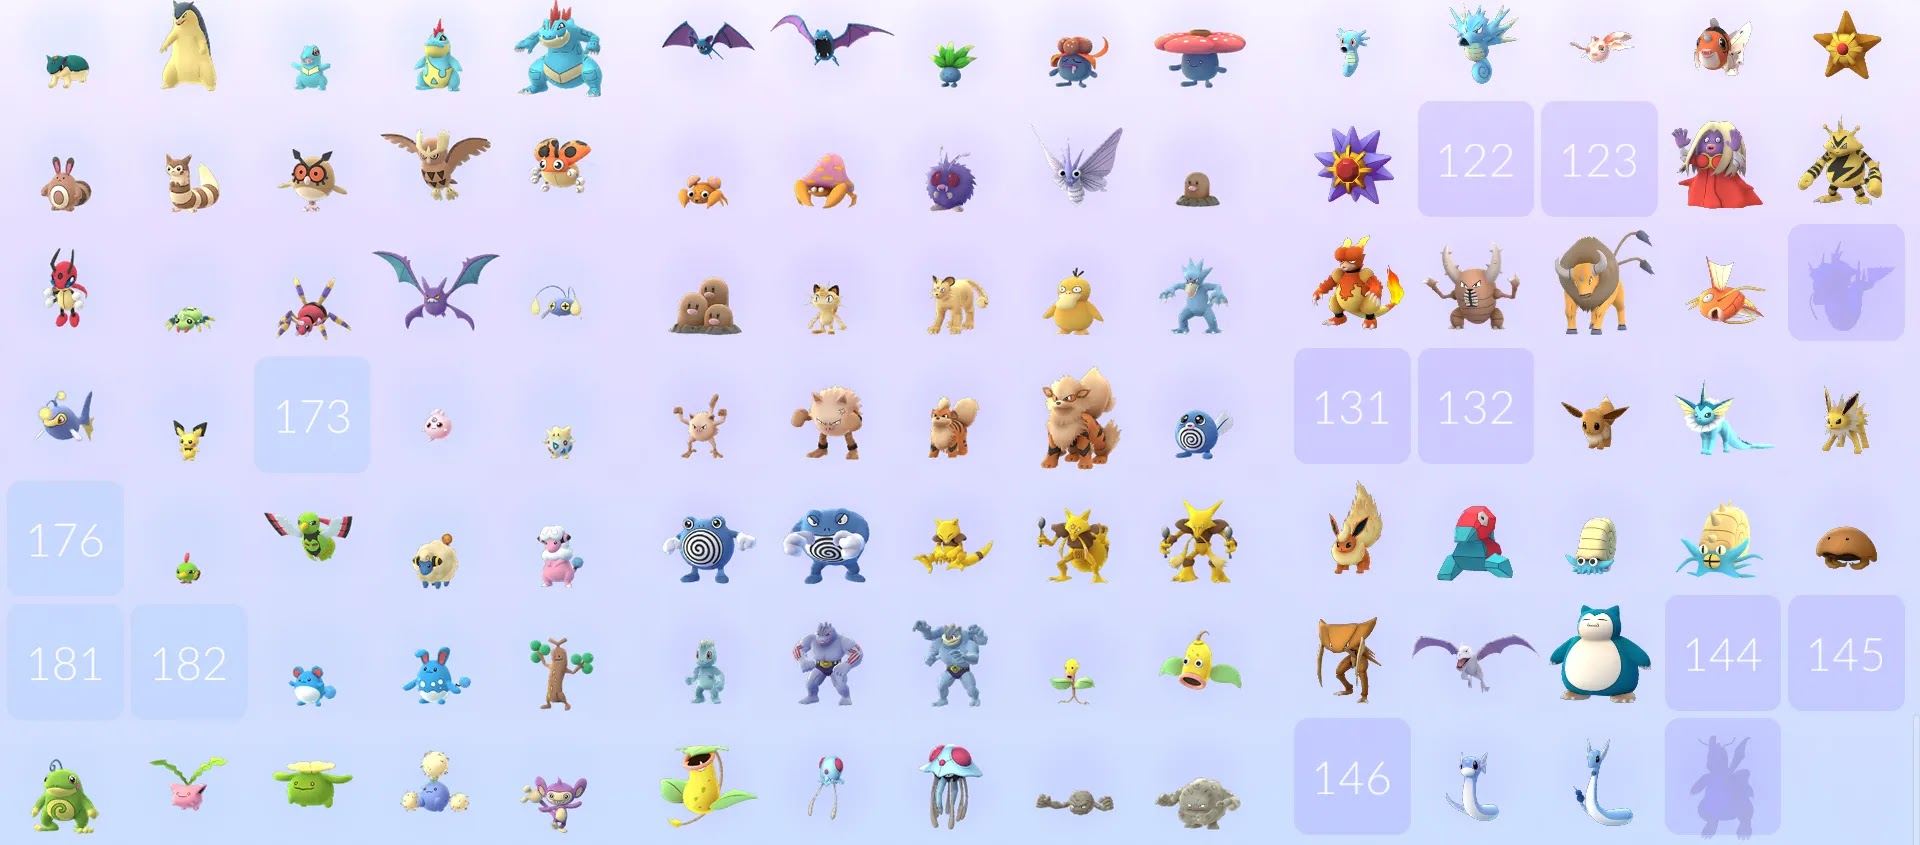 Quantos Pokémon GO existem?